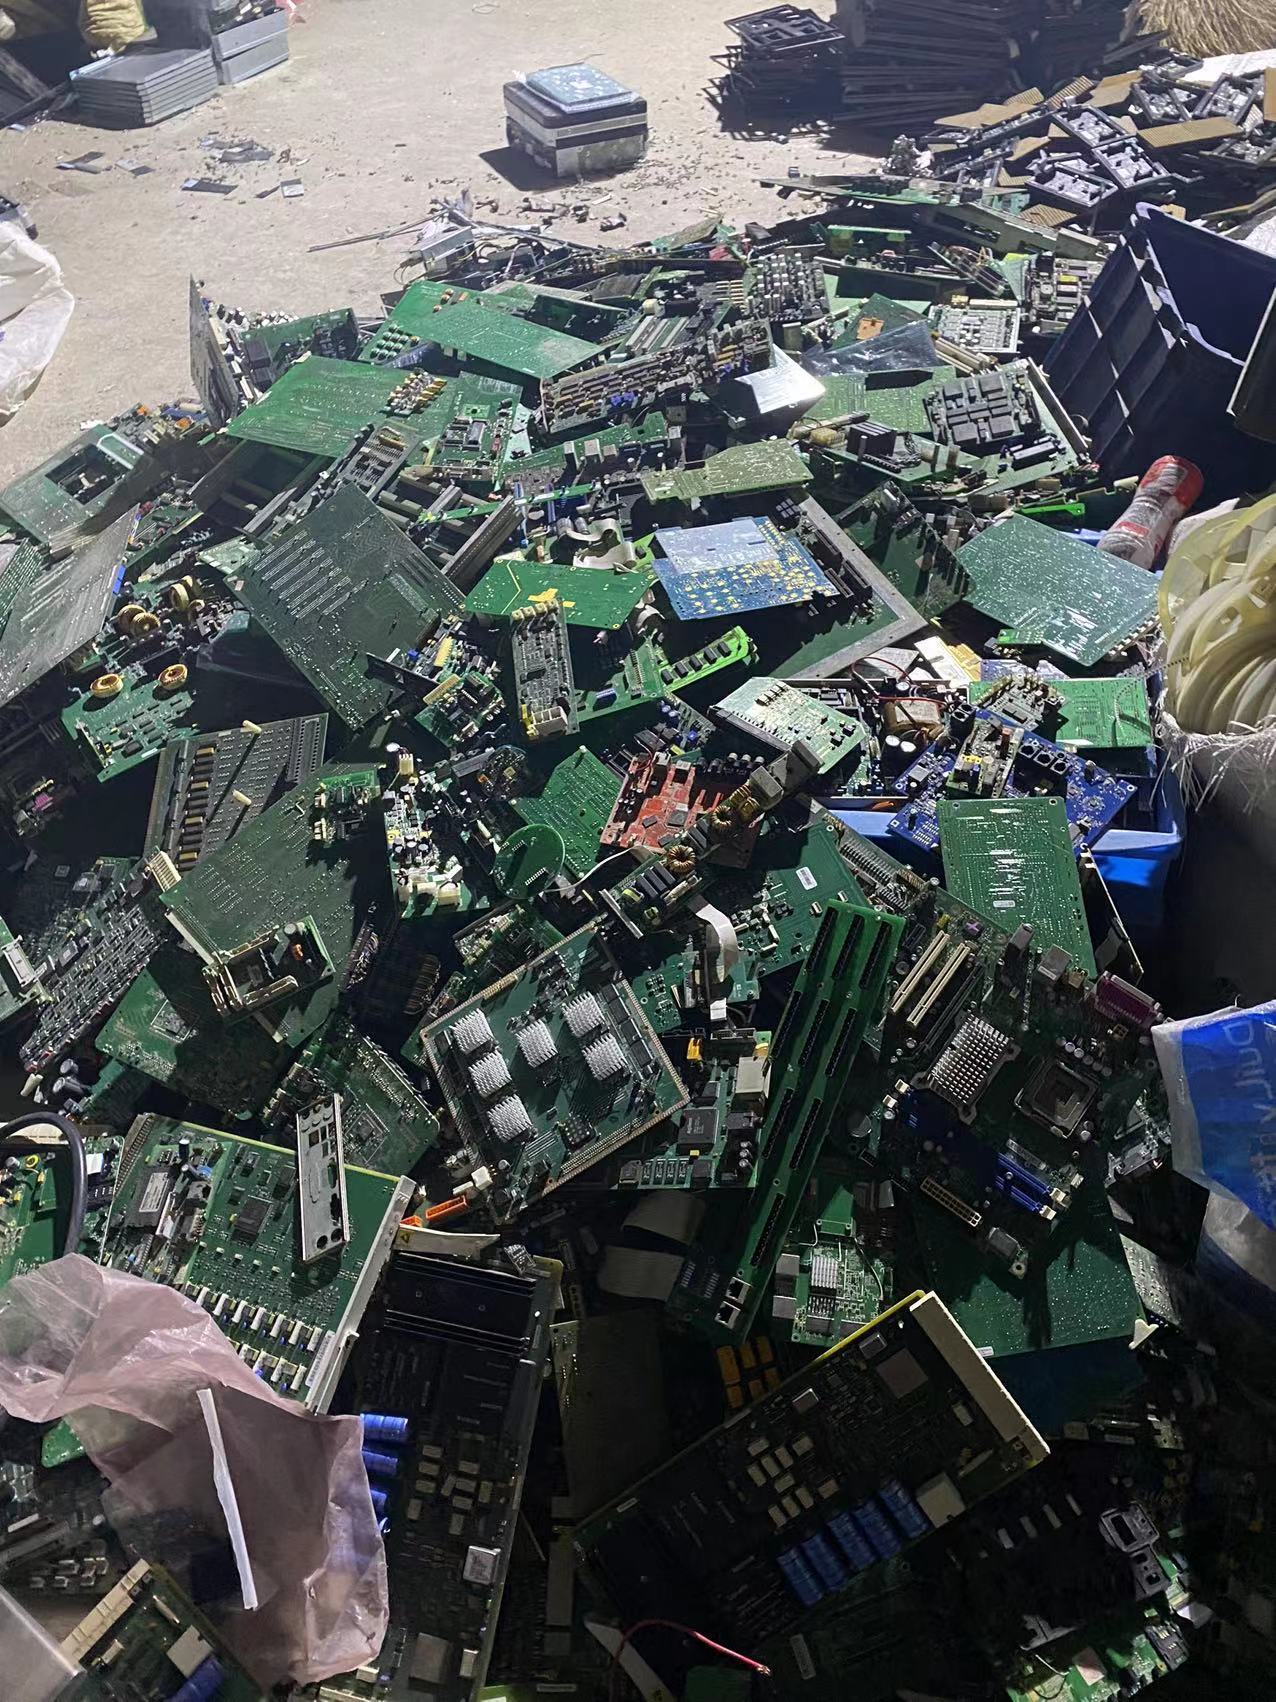 电子产品回收